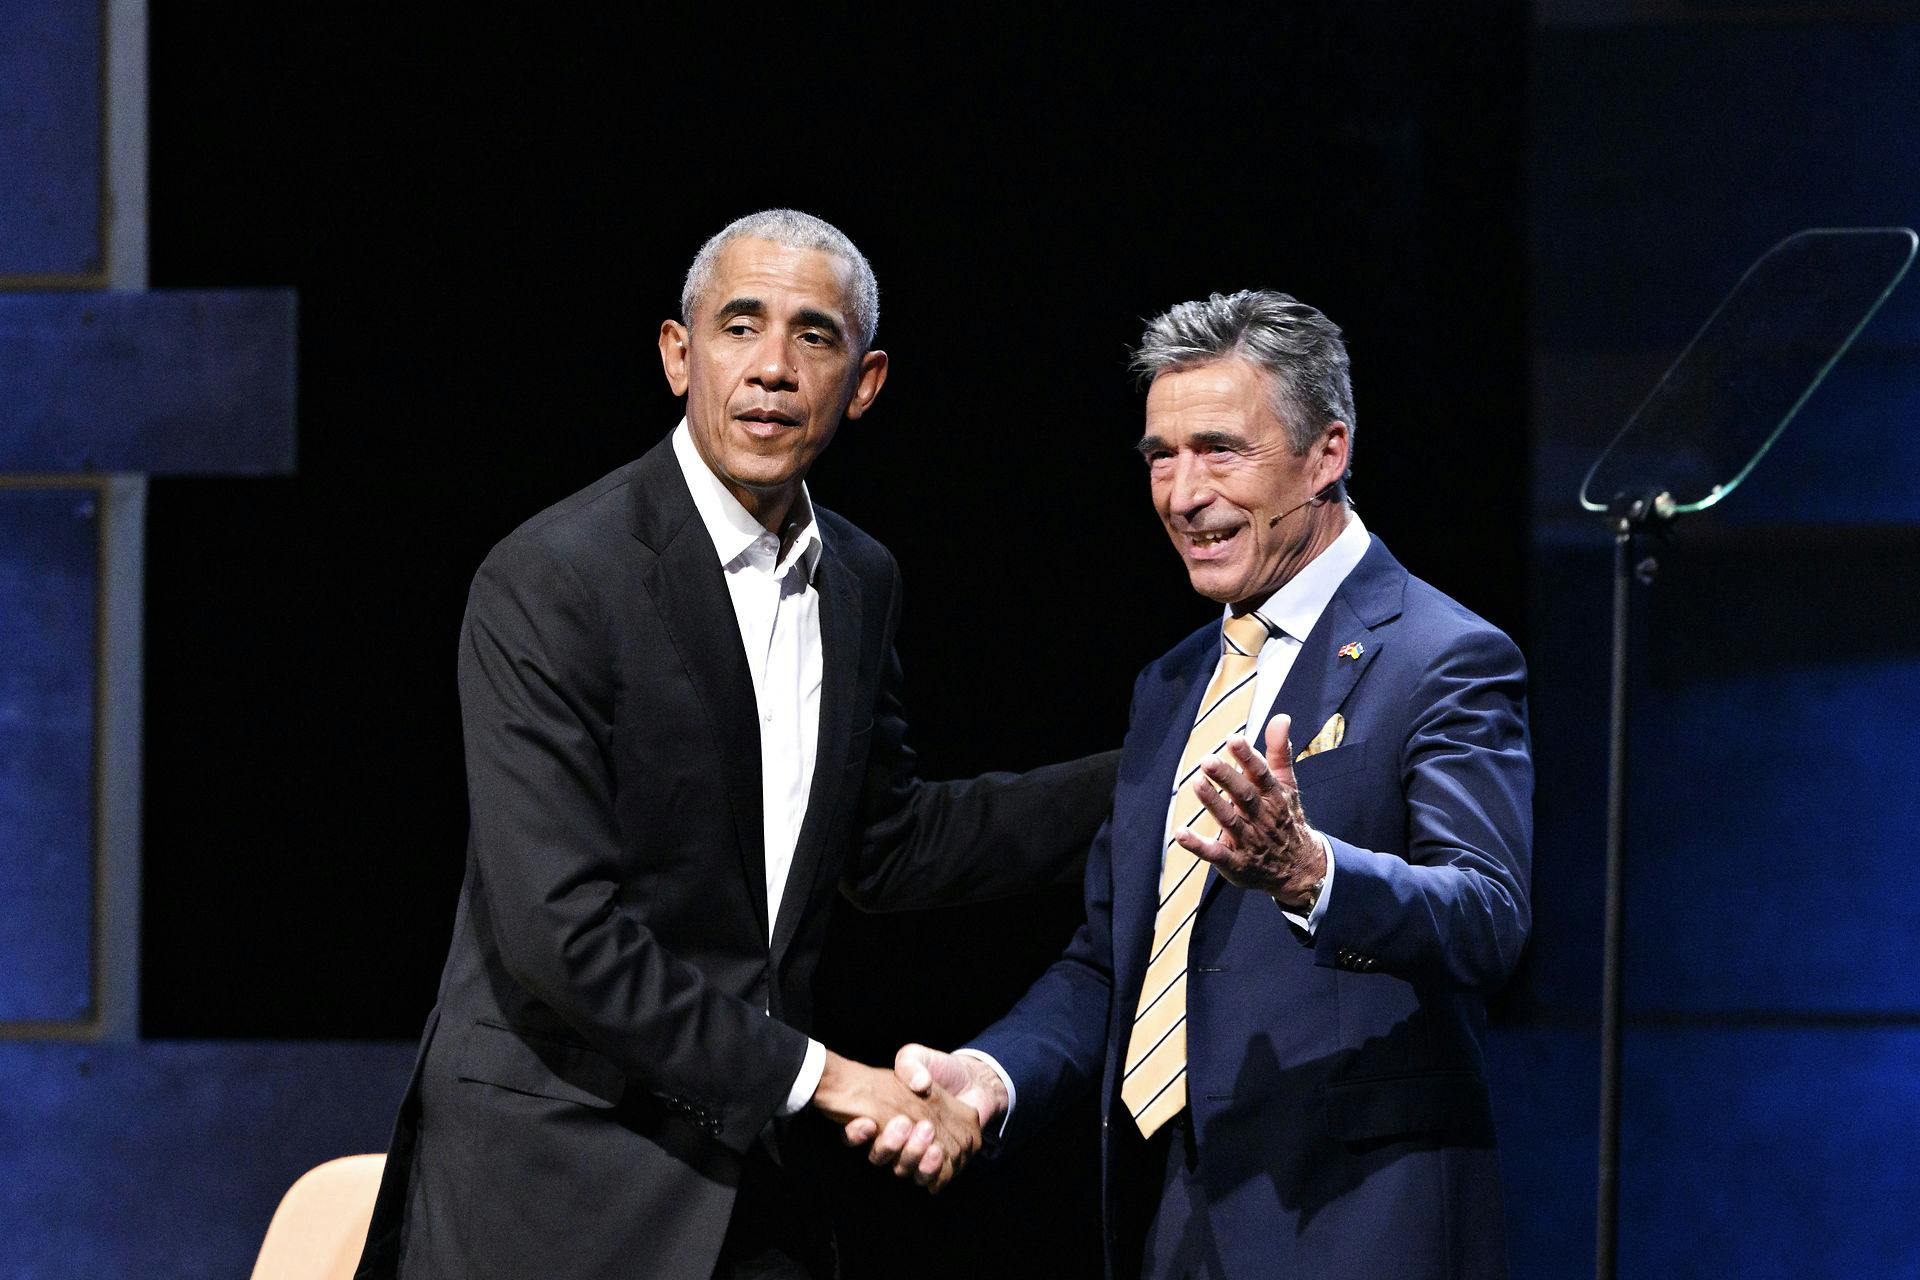 Sagen er særdeles pinlig for den tidligere danske statsminister, der her ses med Barack Obama.